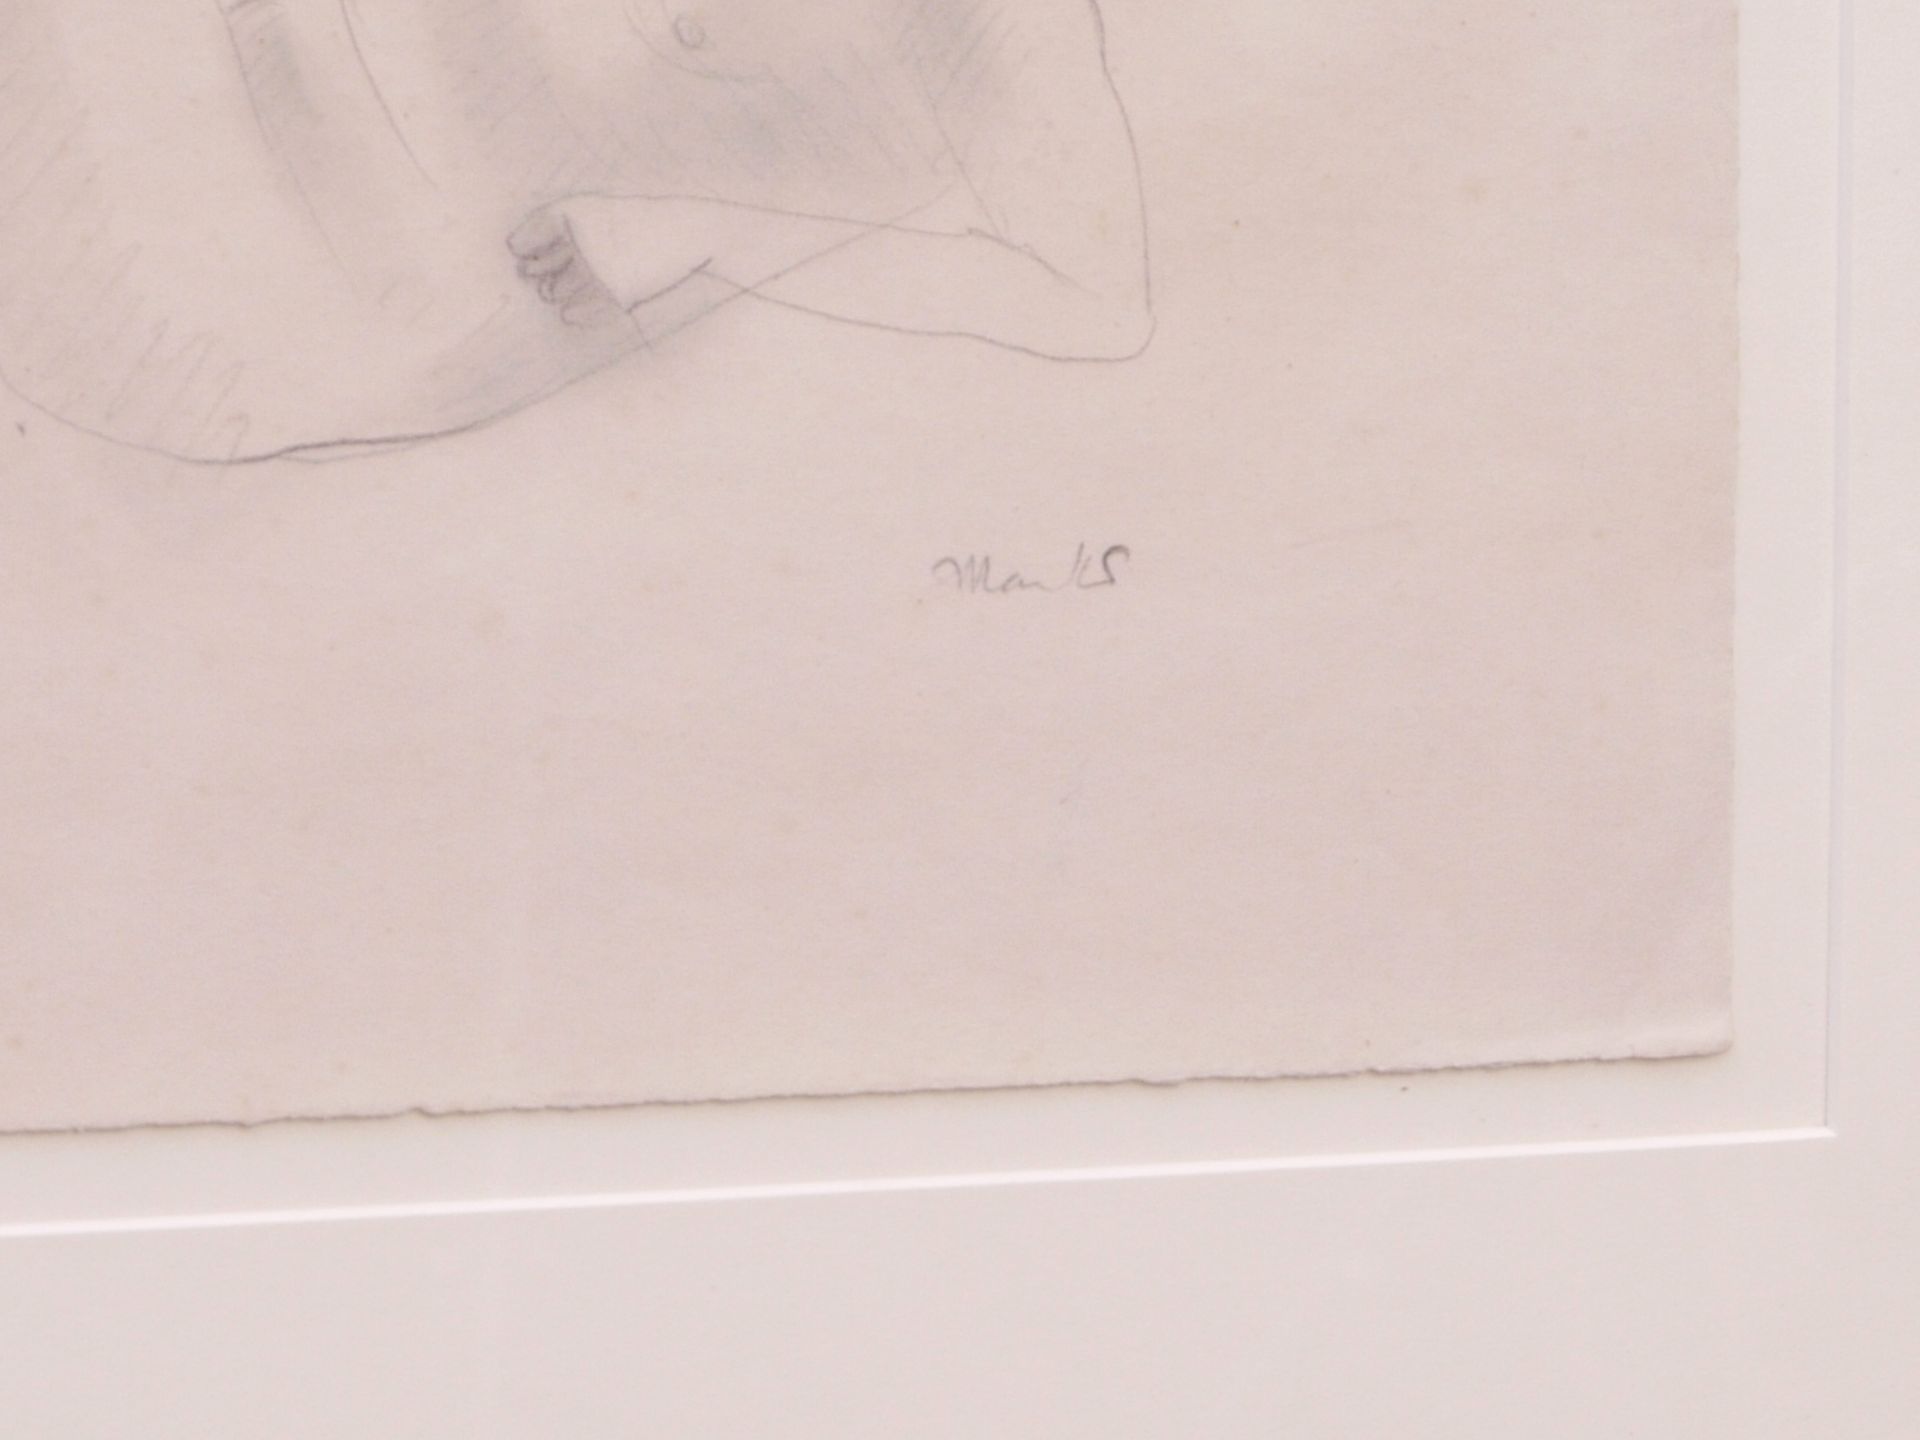 Marcks, Gerhard (1889-1981) - Zeichnung Liegender Junge - Bild 3 aus 4